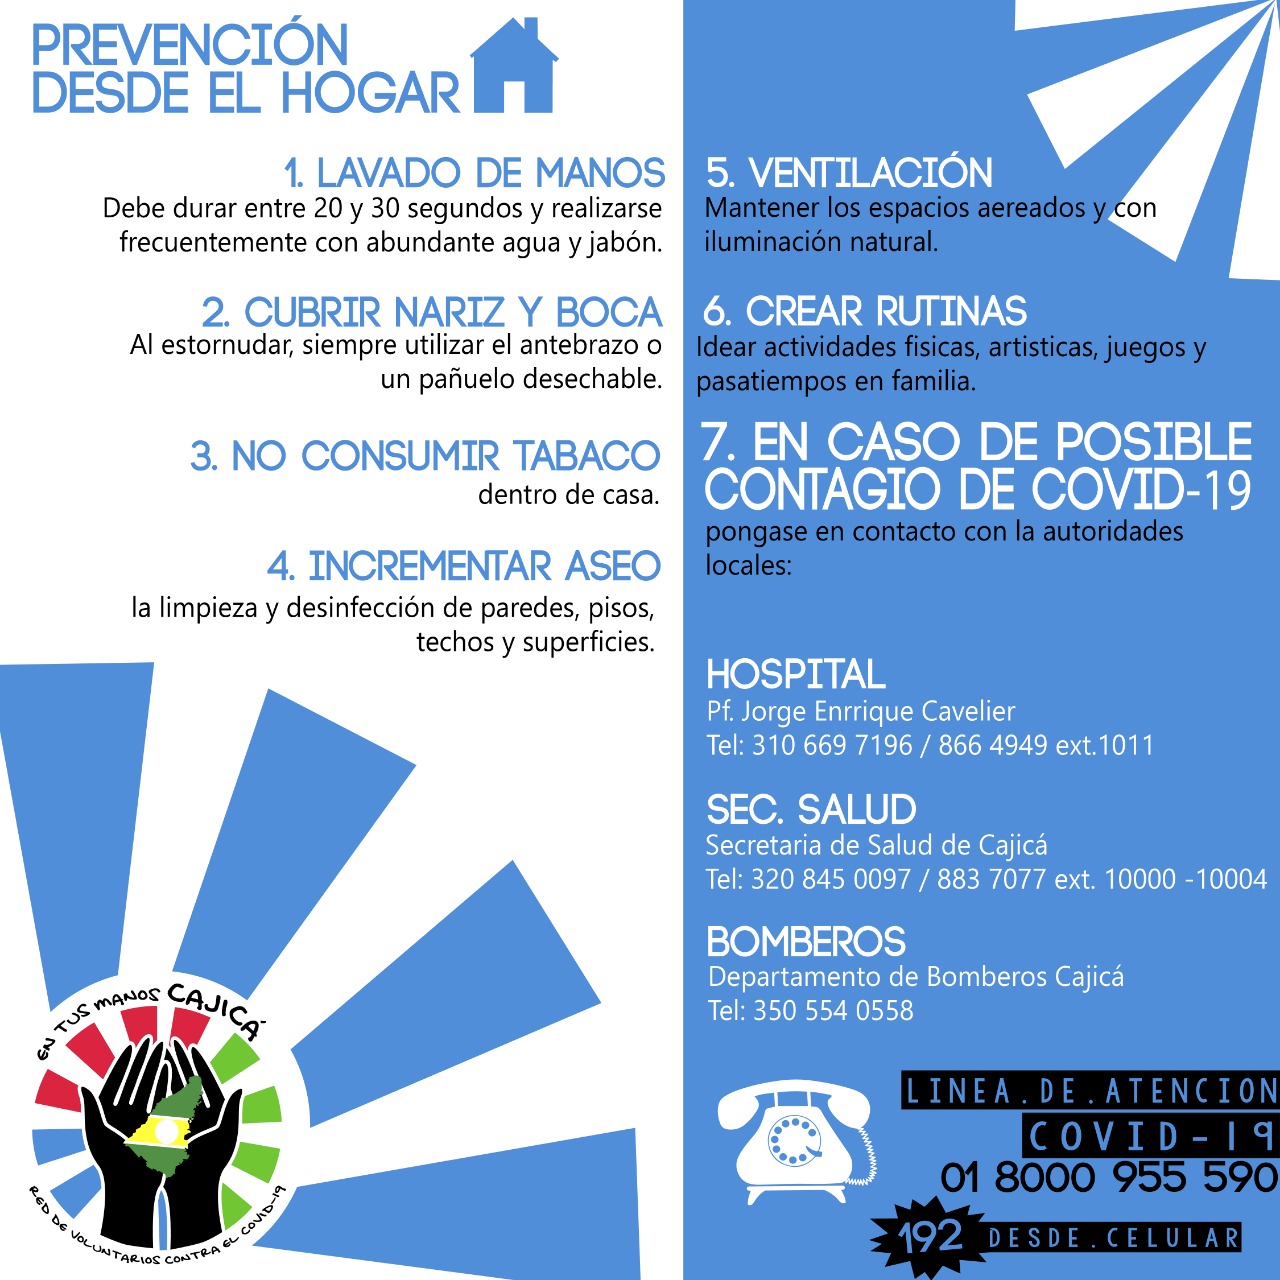 Donaciones en Cajicá para ayudar a las familias vulnerables